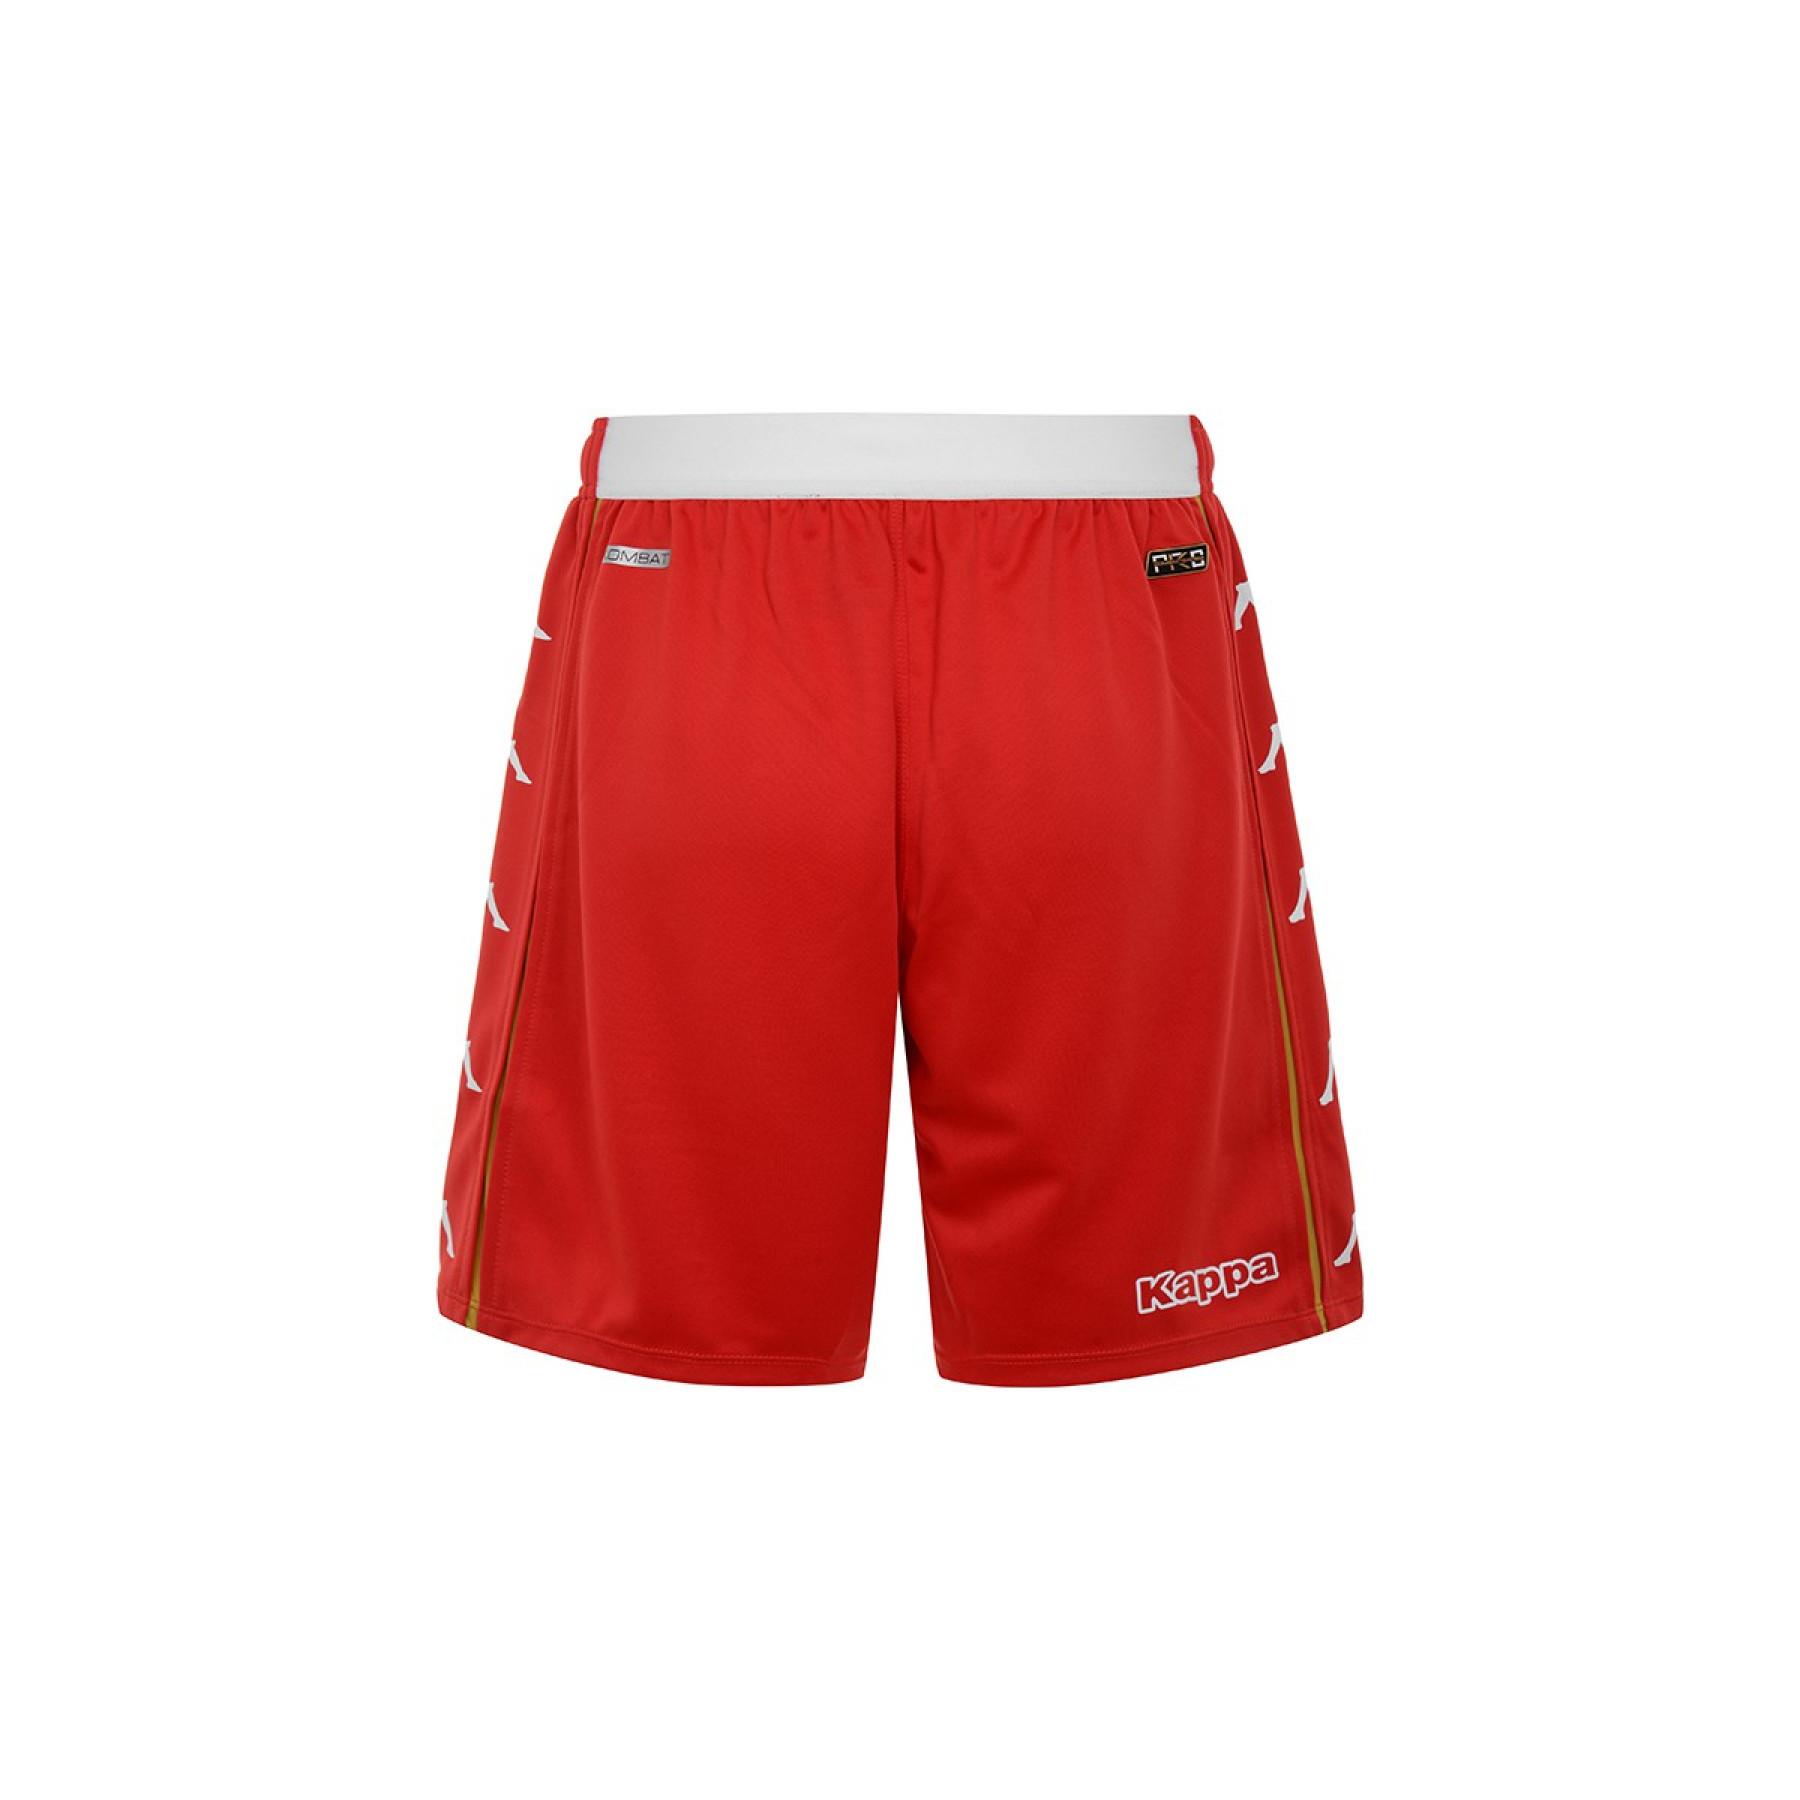 Outdoor-Shorts AS Monaco 2020/21